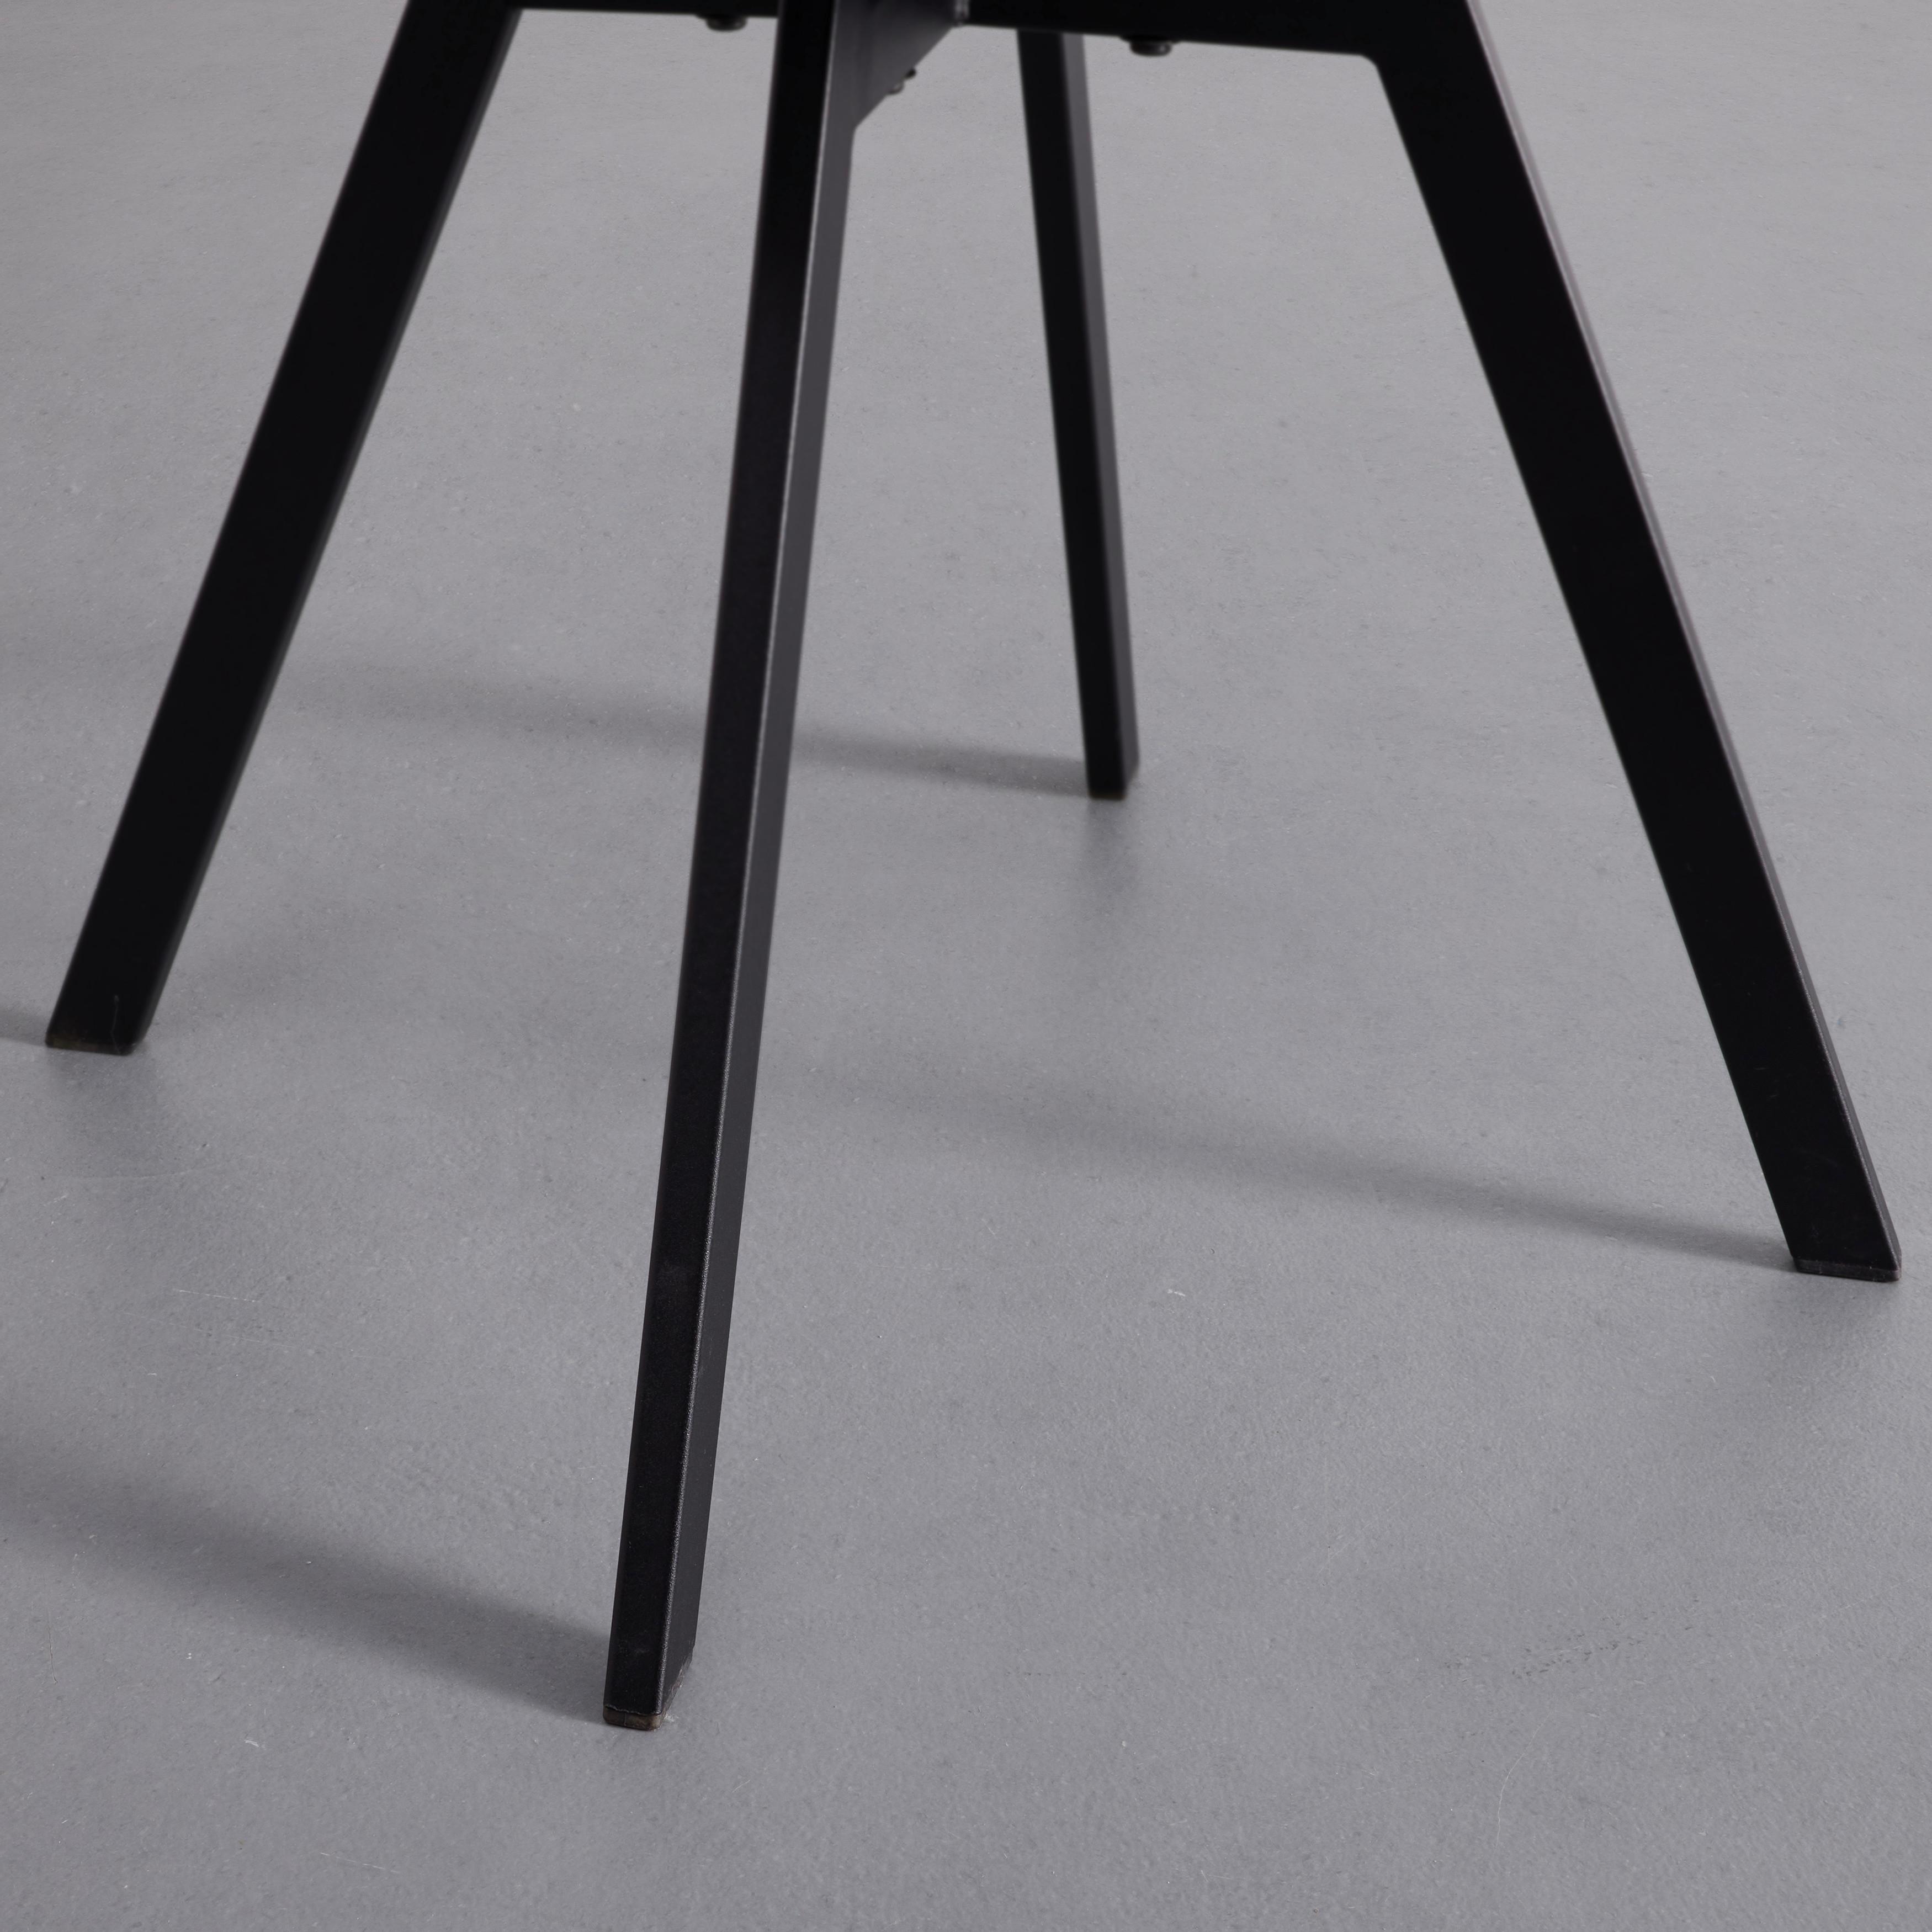 Stuhl "Mia", Samtbezug, schwarz, Gepolstert - Schwarz, MODERN, Textil/Metall (45/84/55cm) - Bessagi Home